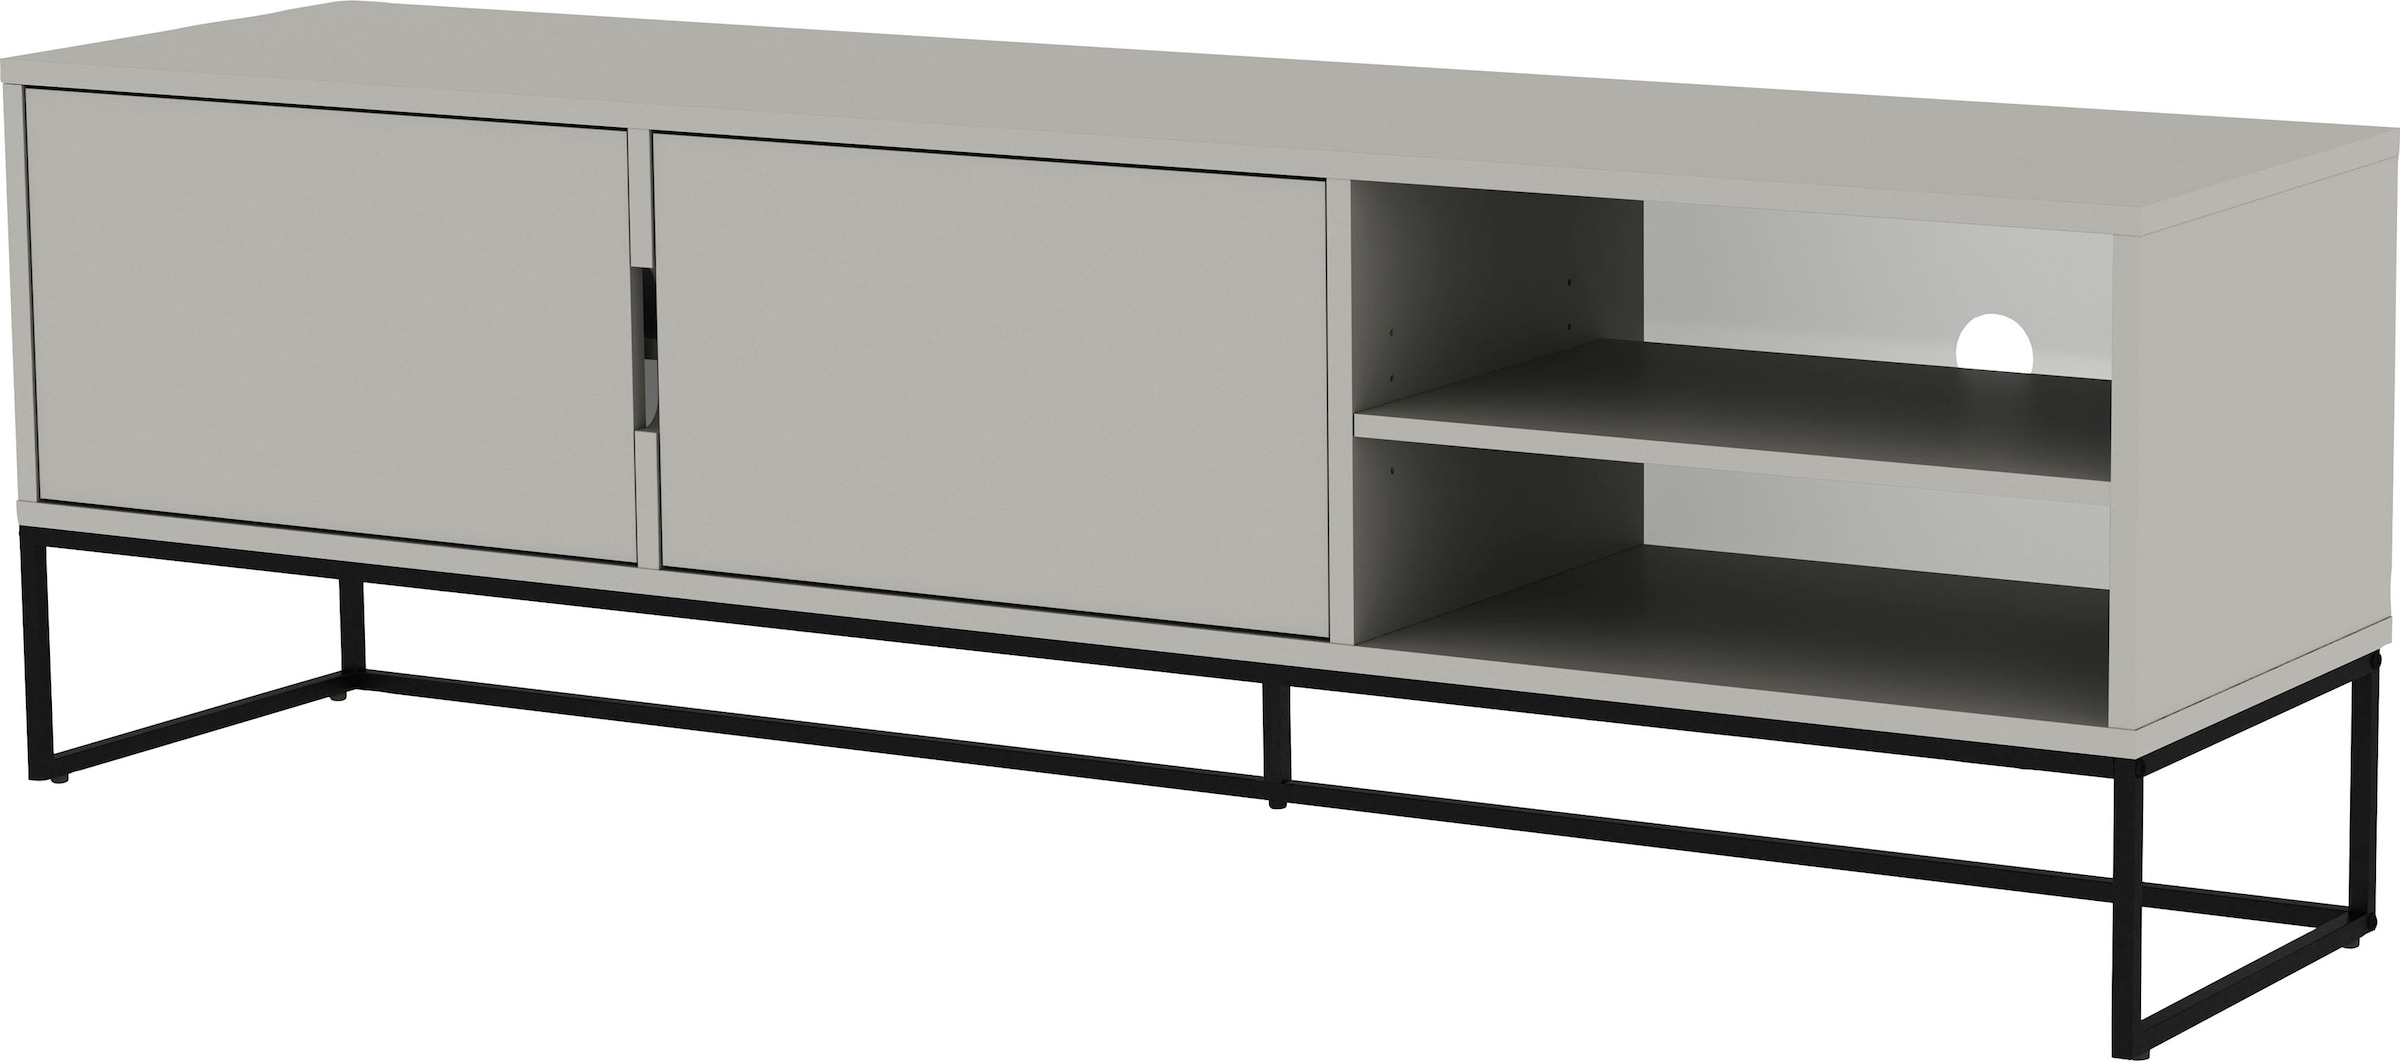 Lowboard »LIPP«, mit 2 Türen und 2 offenen Fächern, Design von Tenzo Design studio